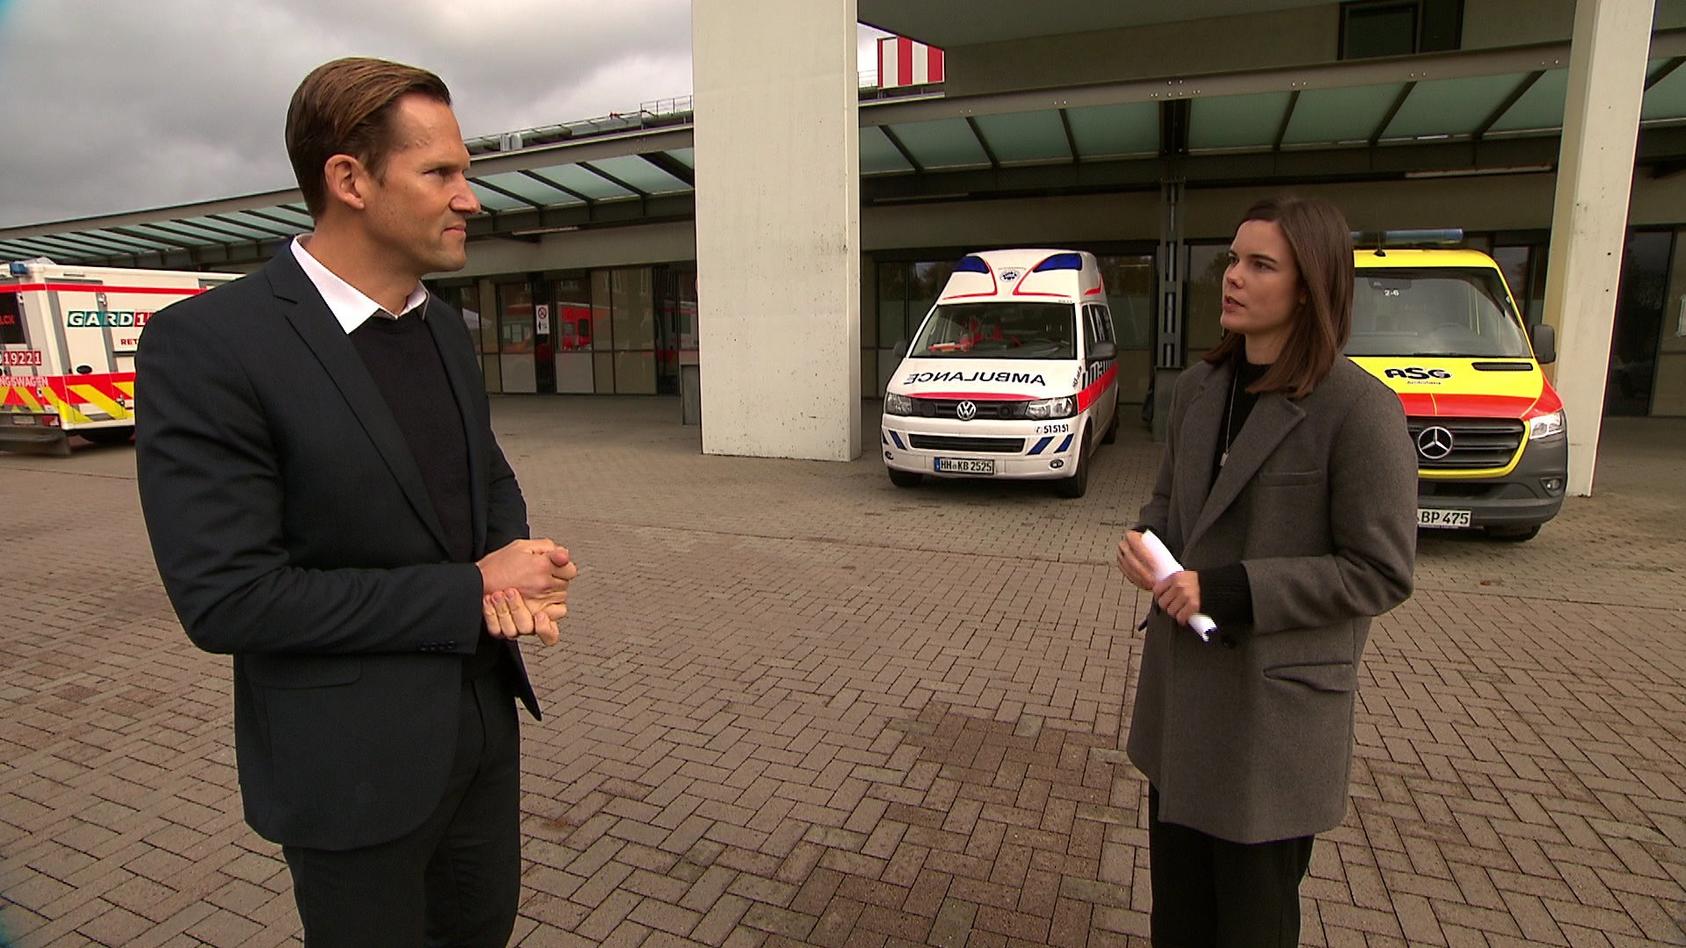 Prof. Herborn vom Asklepios-Klinikum Hamburg und RTL-Reporterin Linda Mürtz im Gespräch